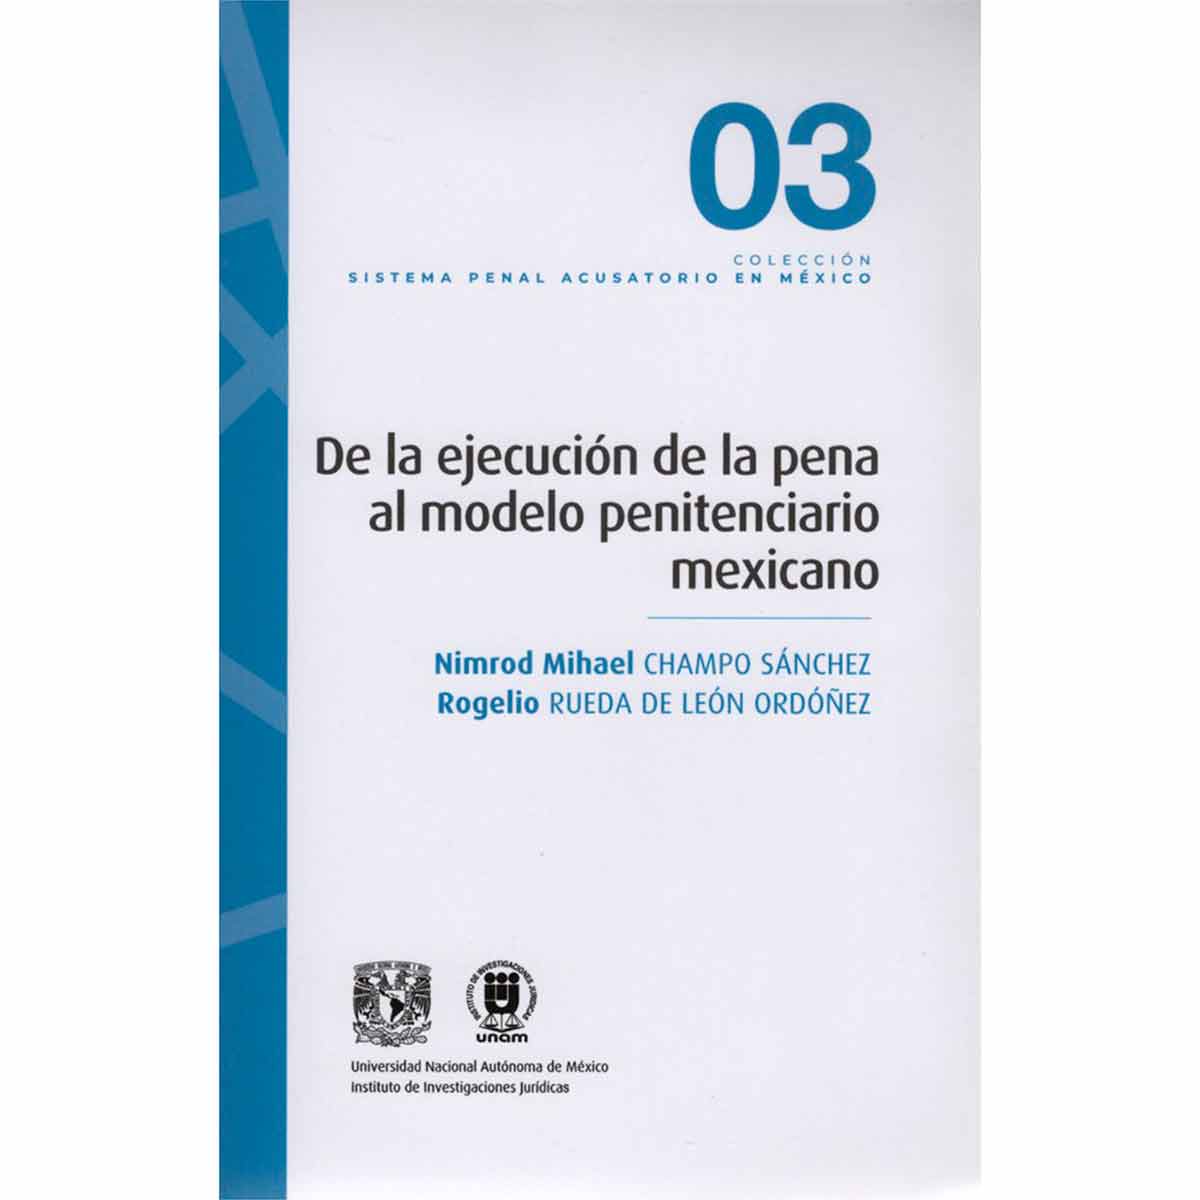 DE LA EJECUCIÓN DE LA PENA AL MODELO PENITENCIARIO MEXICANO